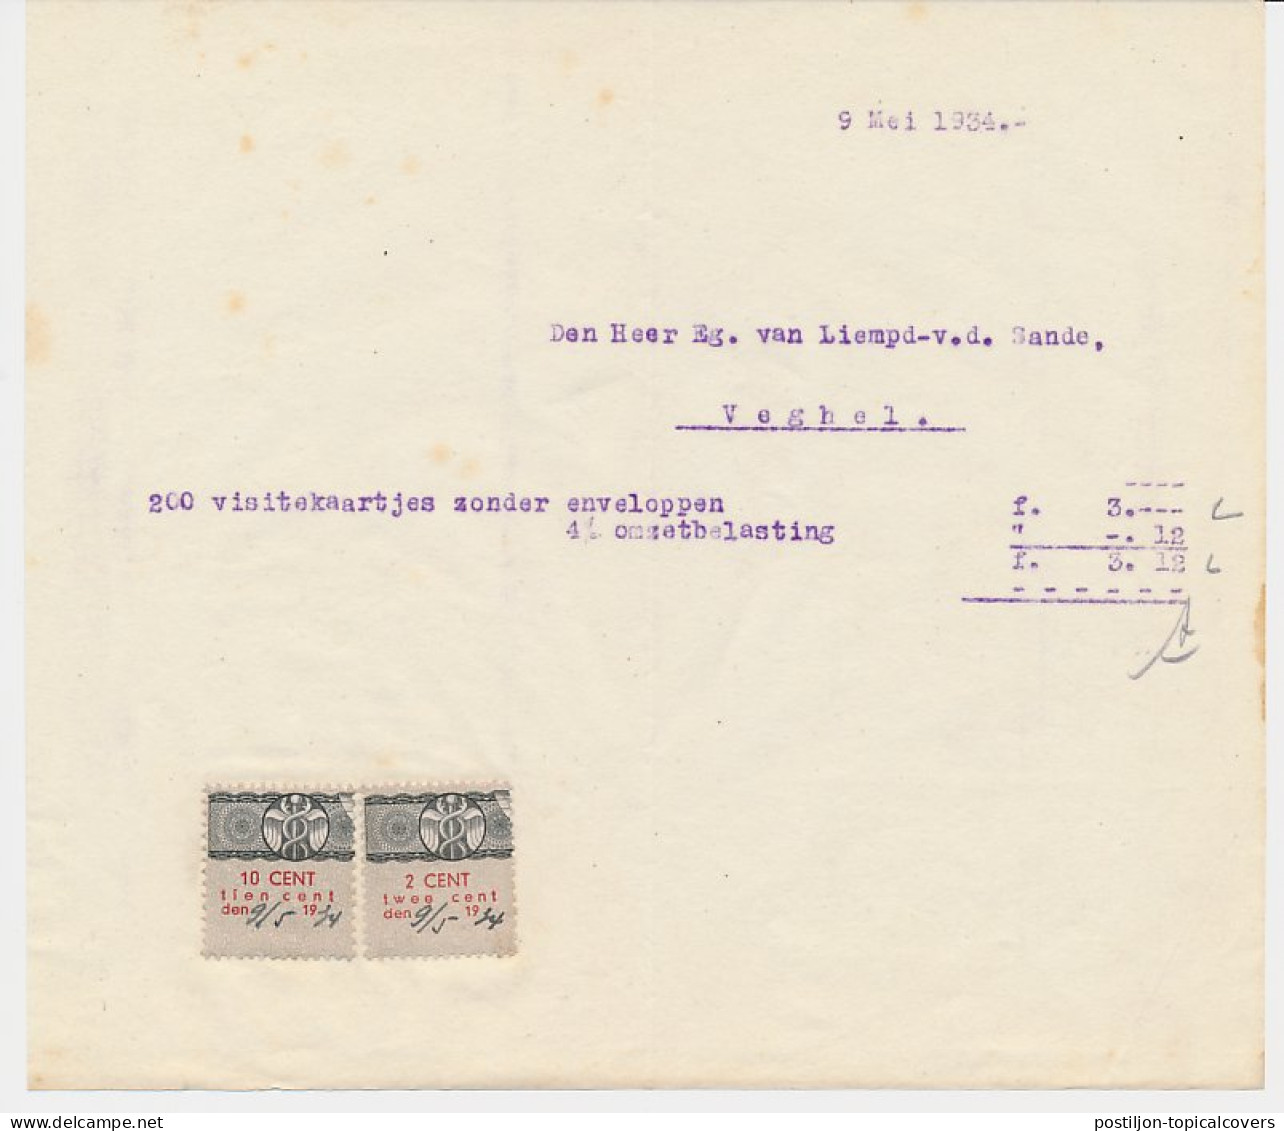 Omzetbelasting 2 / 10 CENT - Veghel 1934 - Fiscales